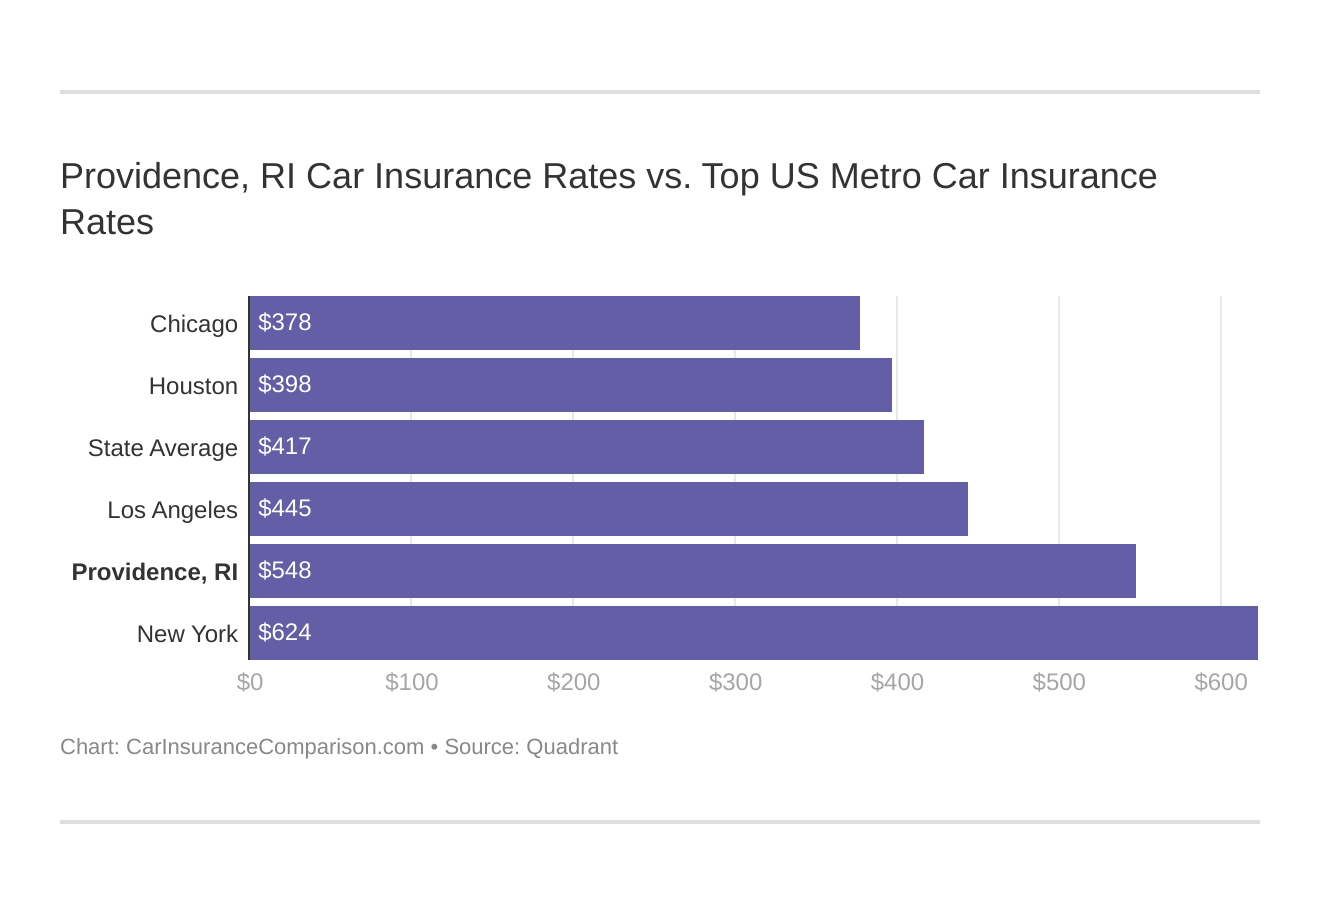 Providence, RI Car Insurance Rates vs. Top US Metro Car Insurance Rates